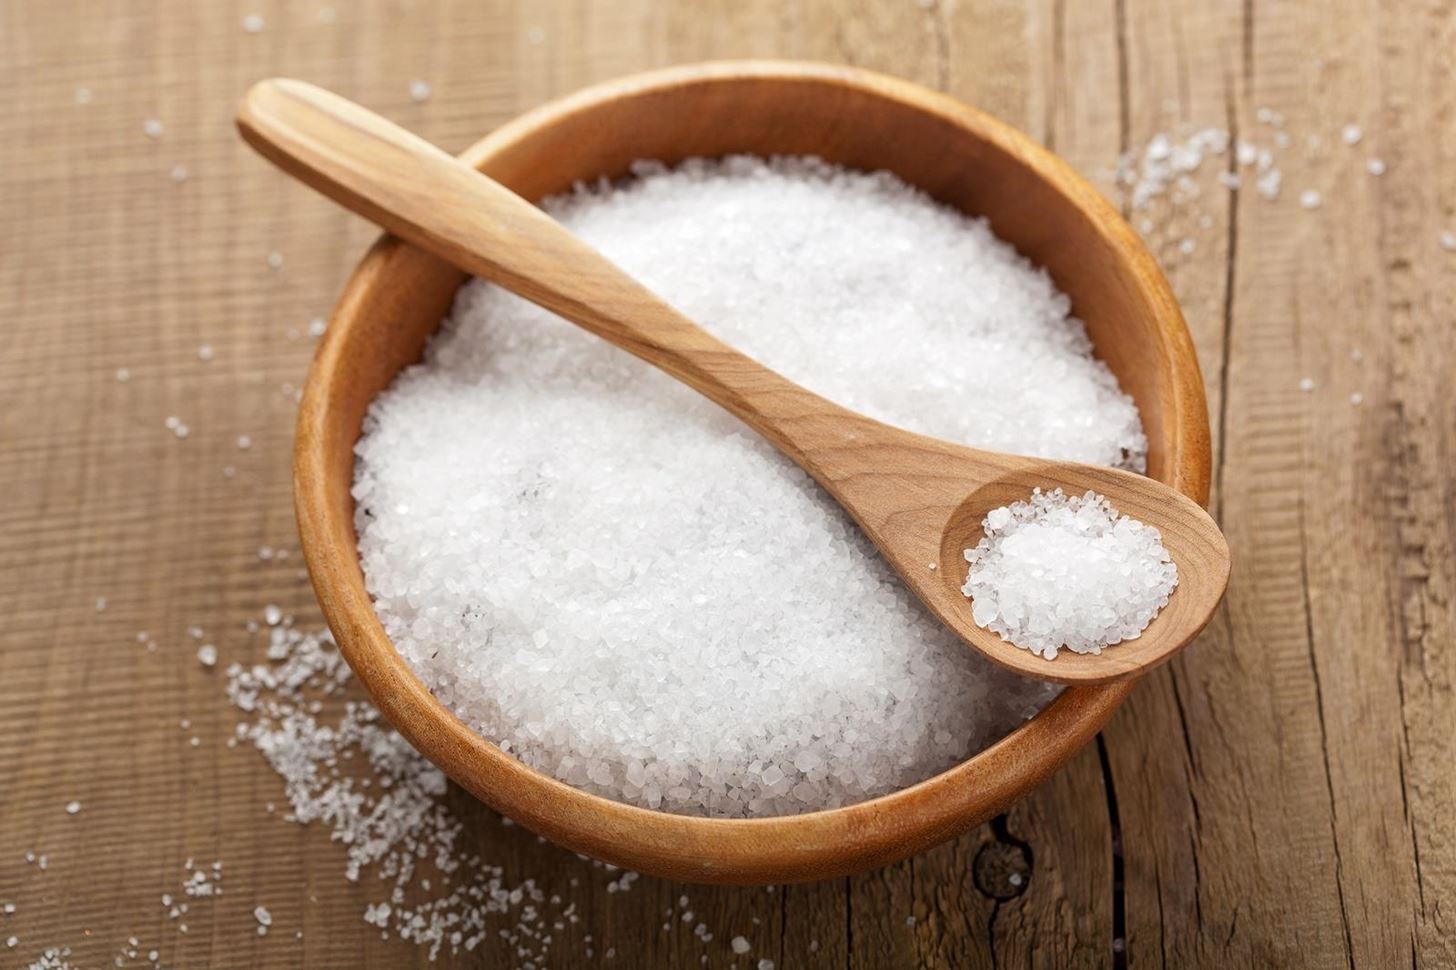 استفاده از محصولات طبیعی سالم به جای نمک